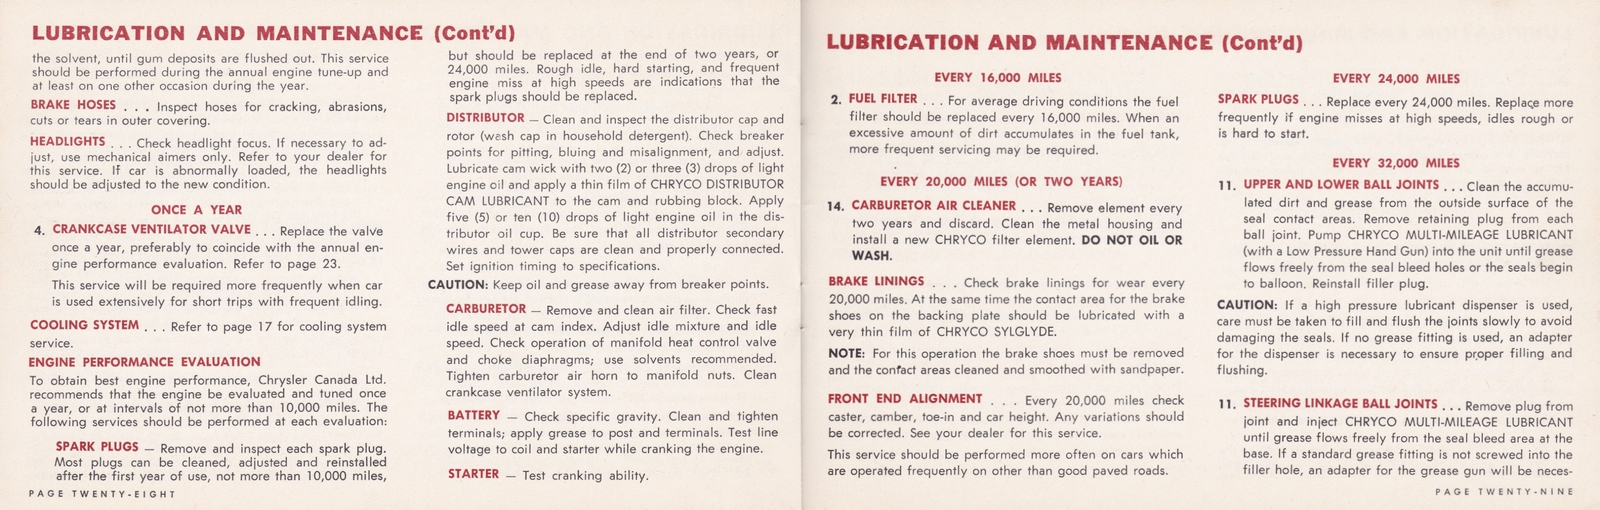 n_1964 Chrysler Owner's Manual (Cdn)-28-29.jpg